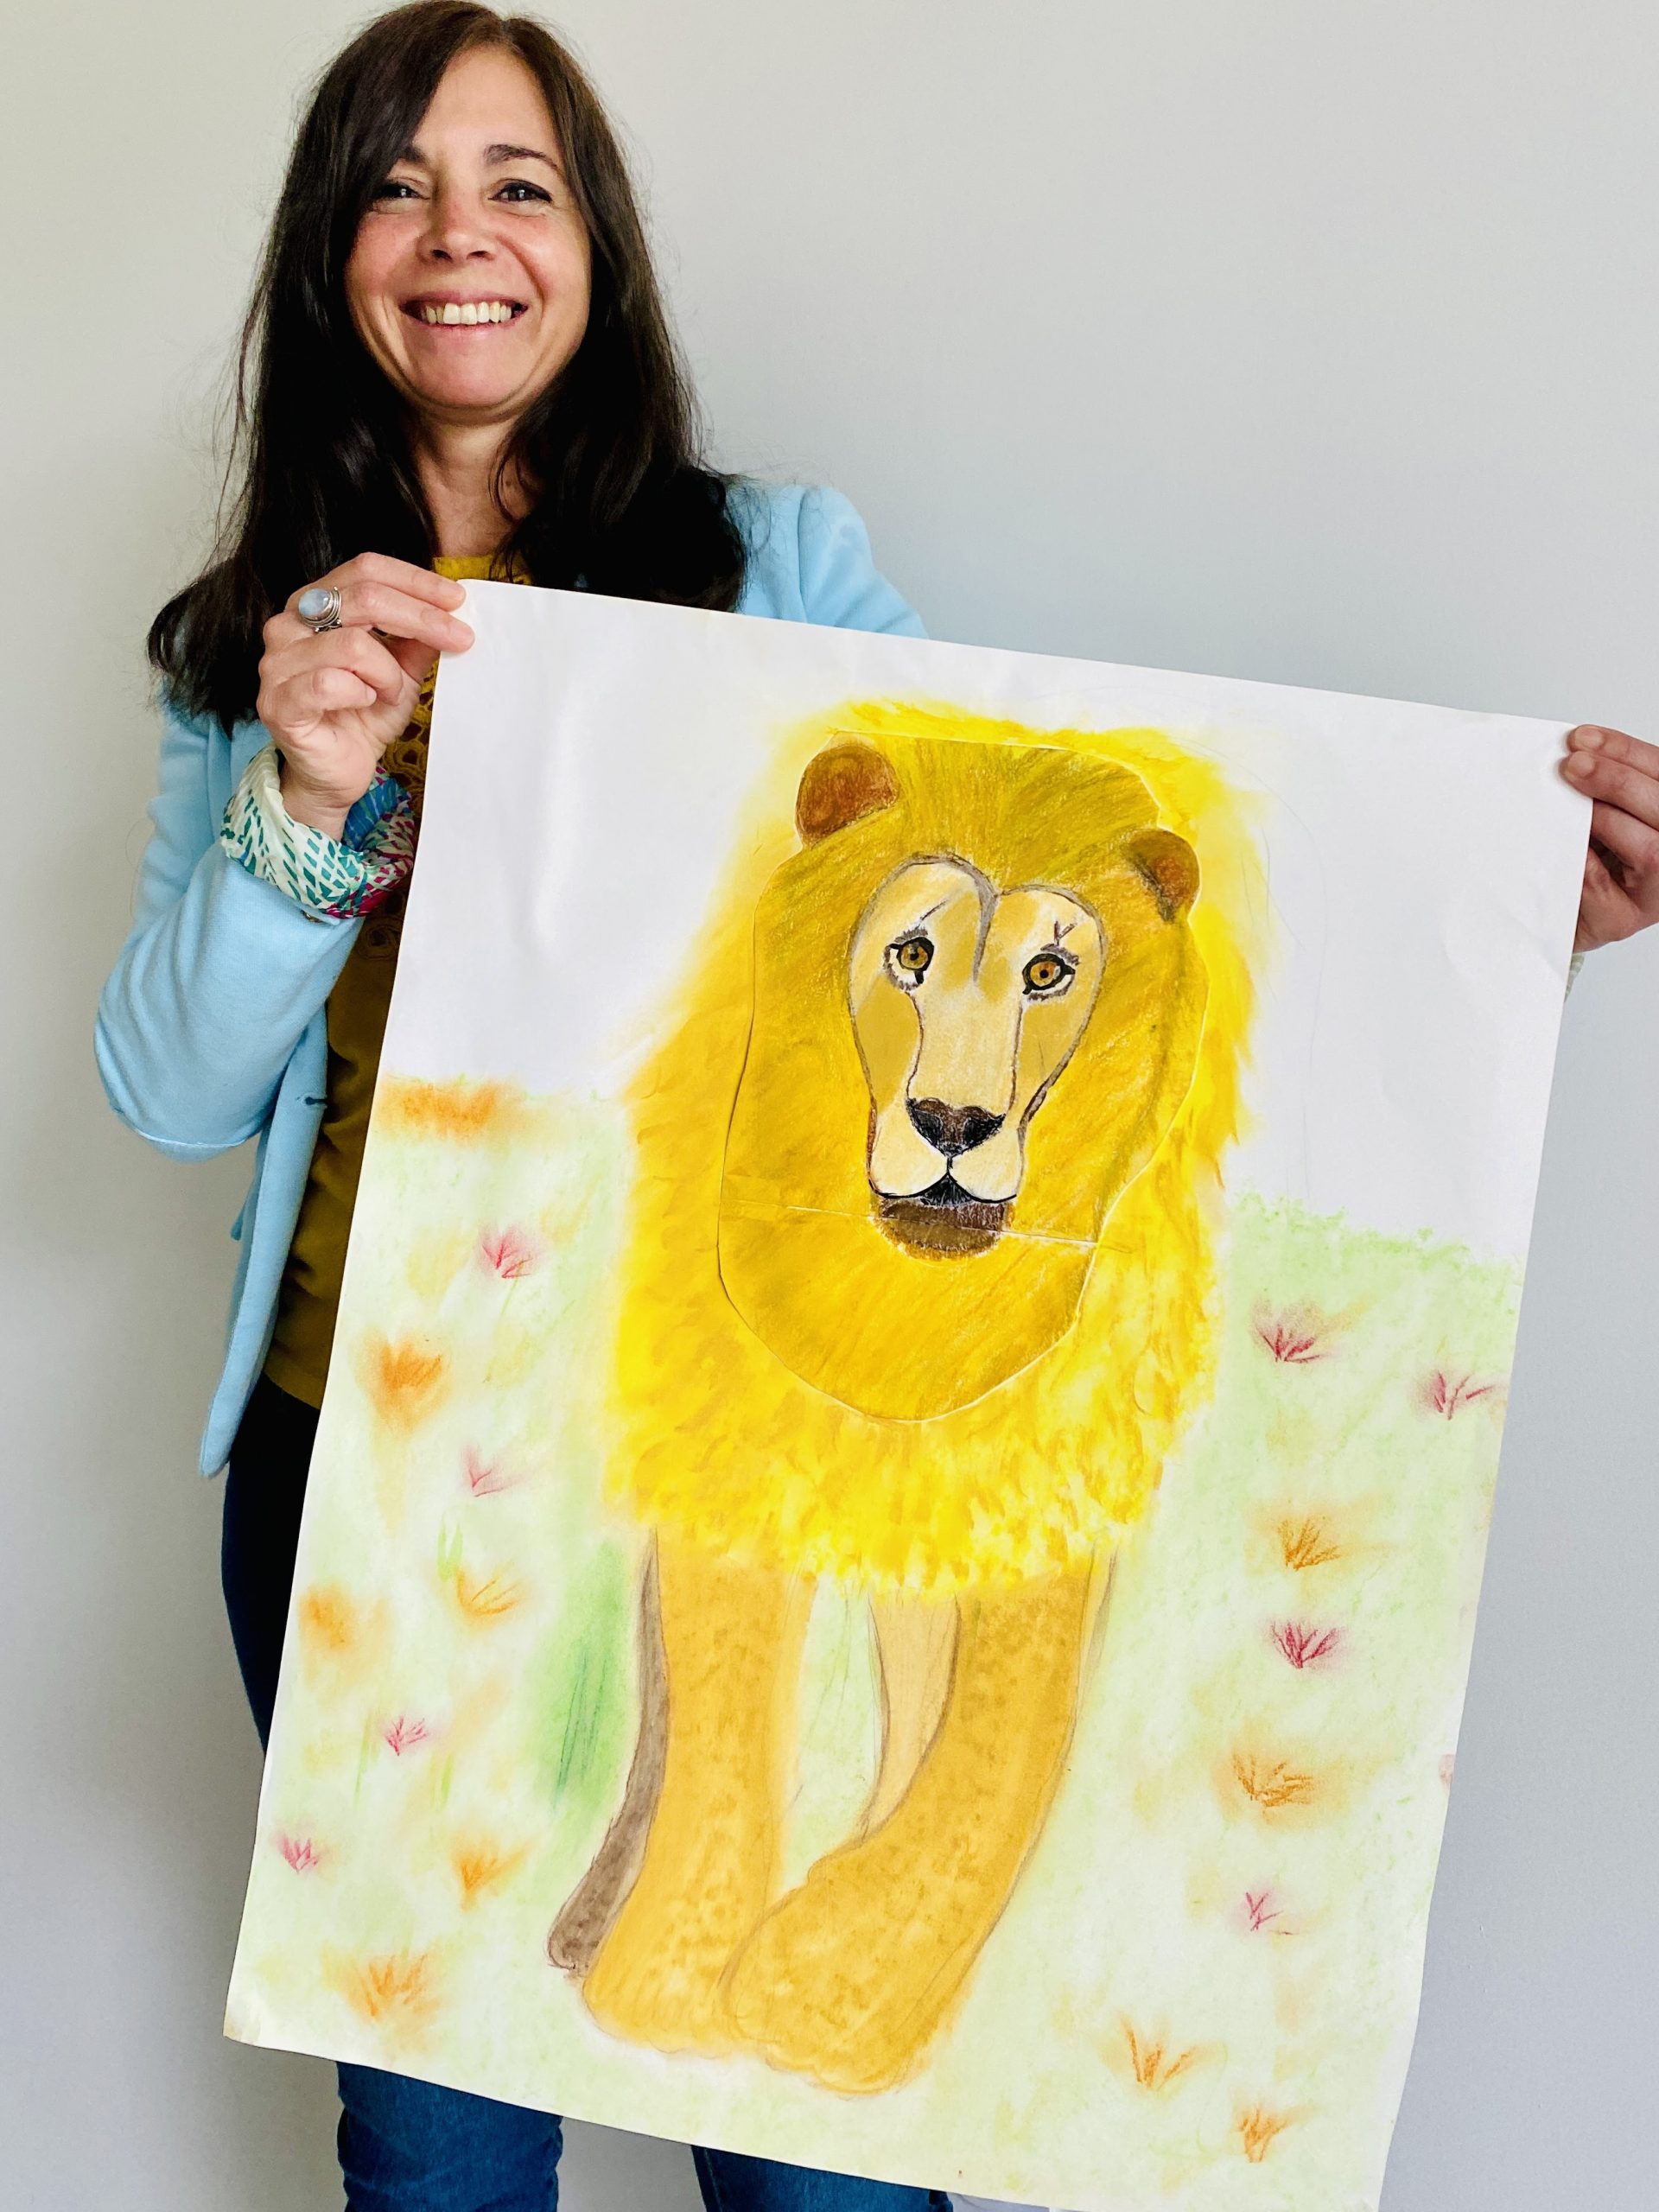 Anne tient un dessin de lion